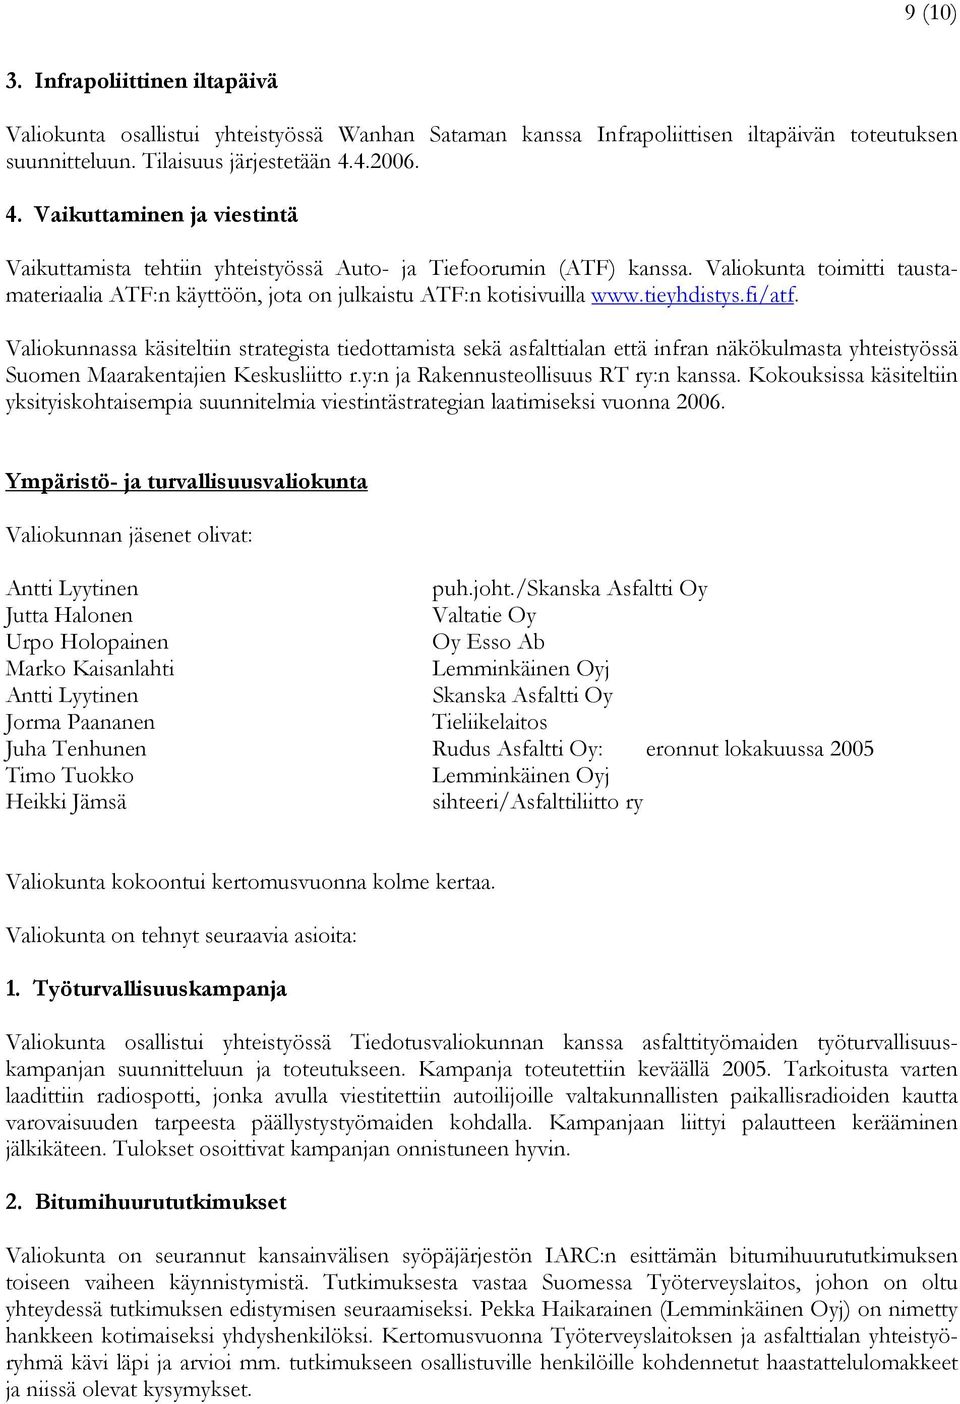 Valiokunta toimitti taustamateriaalia ATF:n käyttöön, jota on julkaistu ATF:n kotisivuilla www.tieyhdistys.fi/atf.